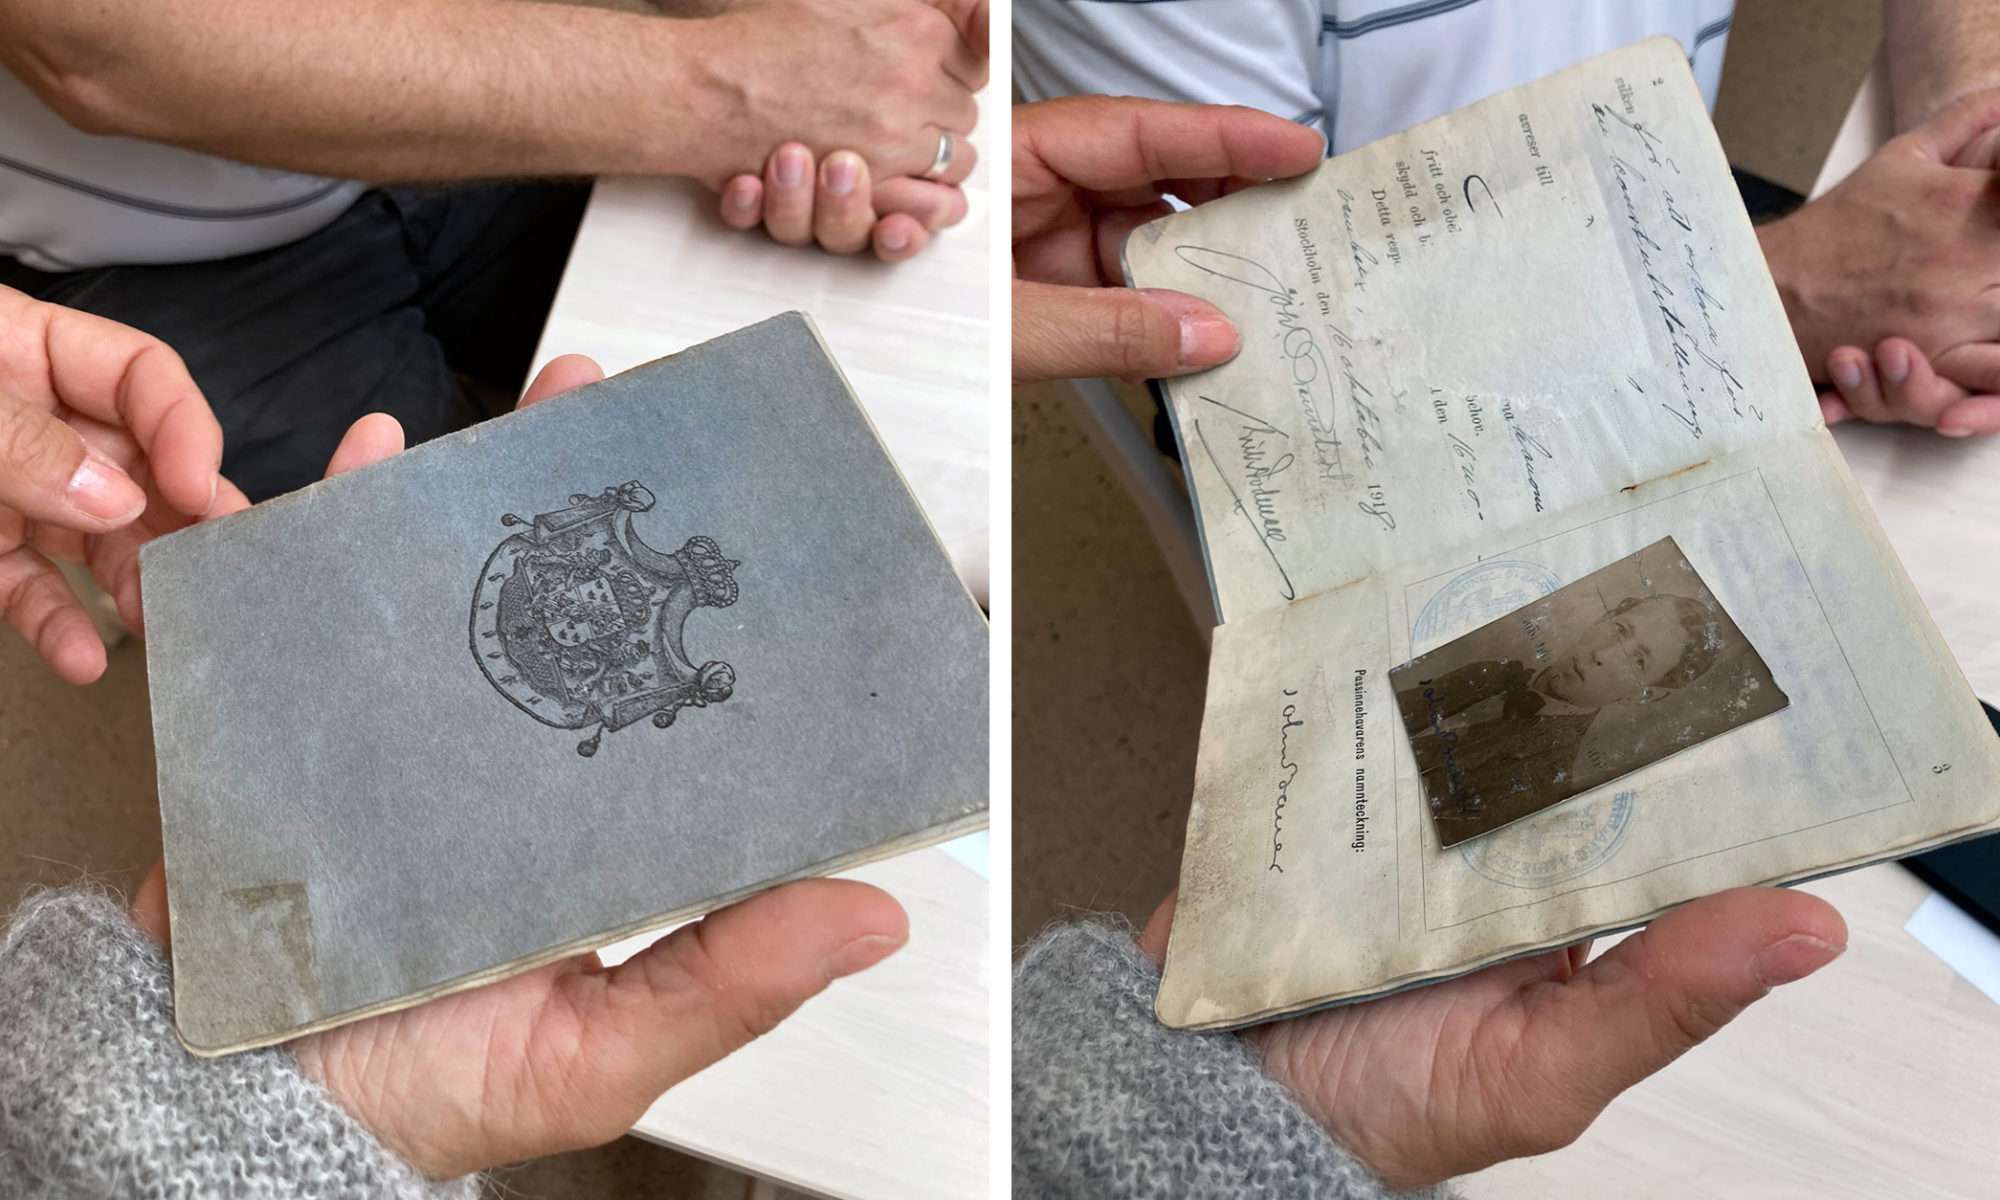 Två bilder på John Bauers pass från 1918. På det ena ser man en blekblå framsida med ett sigill, på andra bilden ett uppslag där ett foto på John Bauer syns.